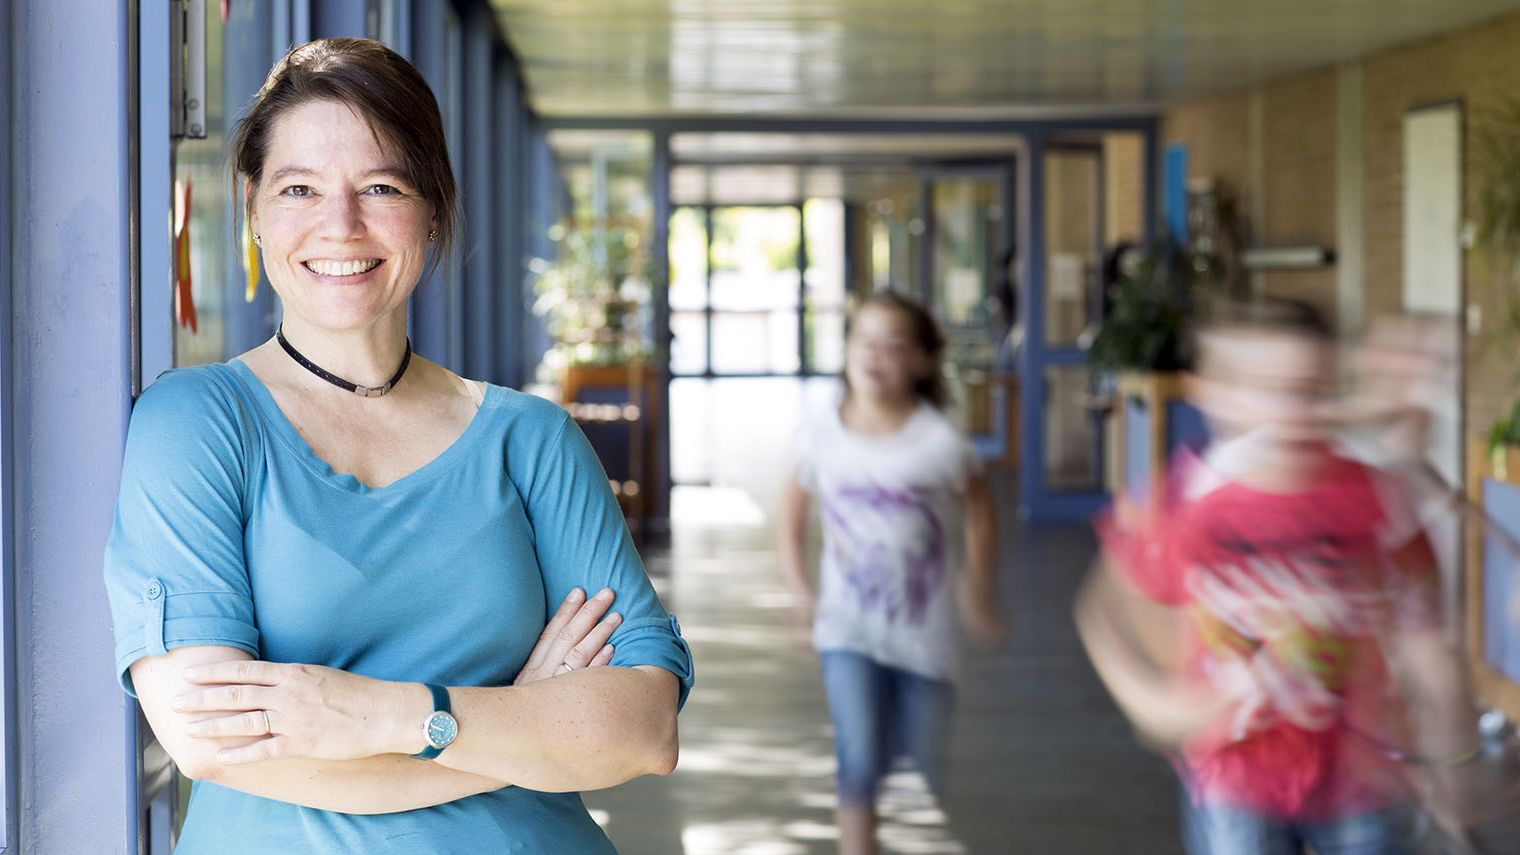 Eine Lehrerin steht in einem Schulflur, sie lächelt in die Kamera, ihre Arme sind überkreuzt. Im Hintergrund rennen Kinder.